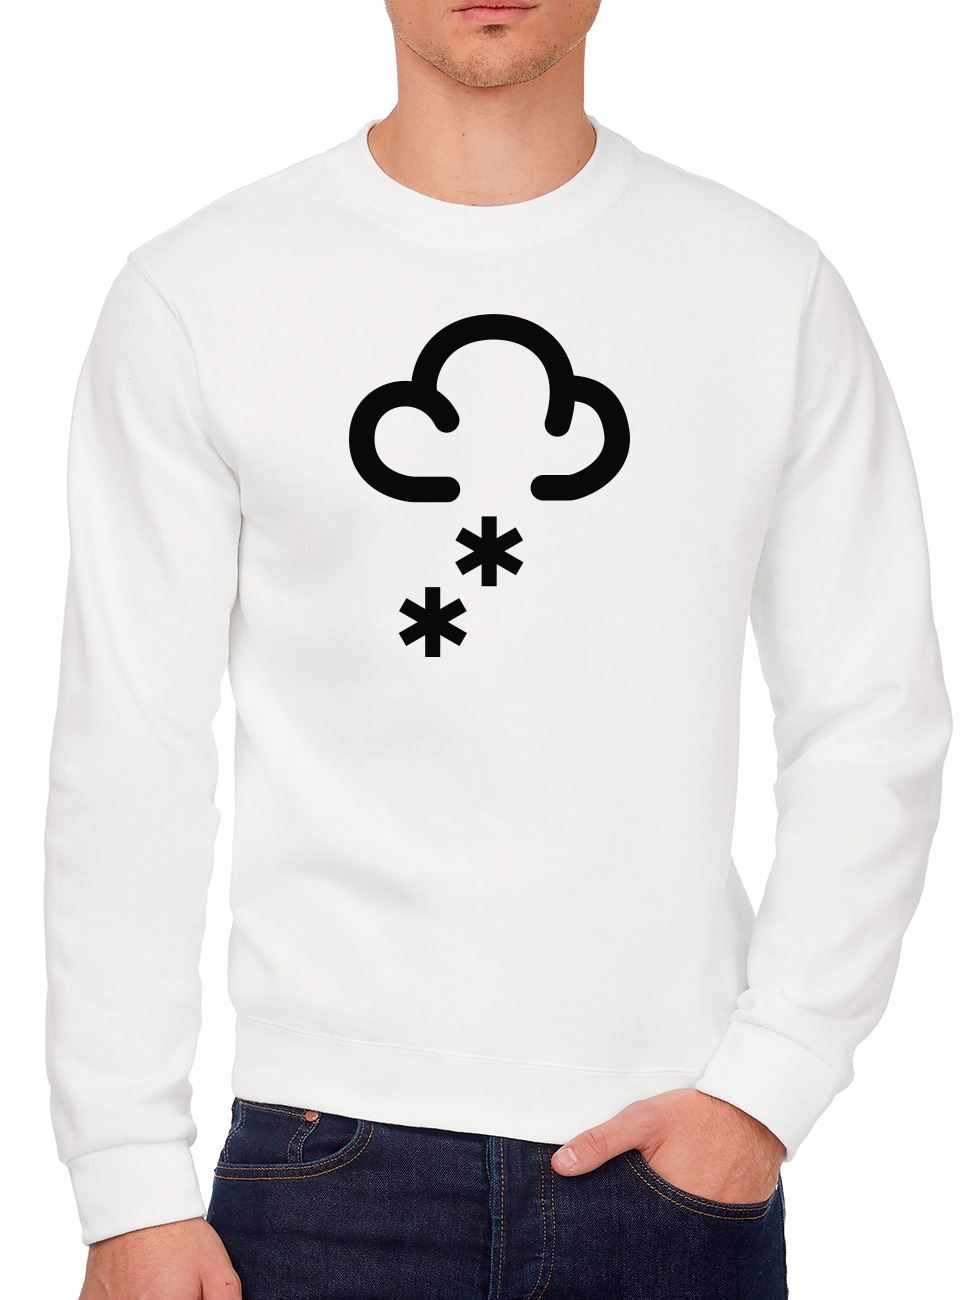 Snowing Cloud Snow - Youth & Mens Sweatshirt